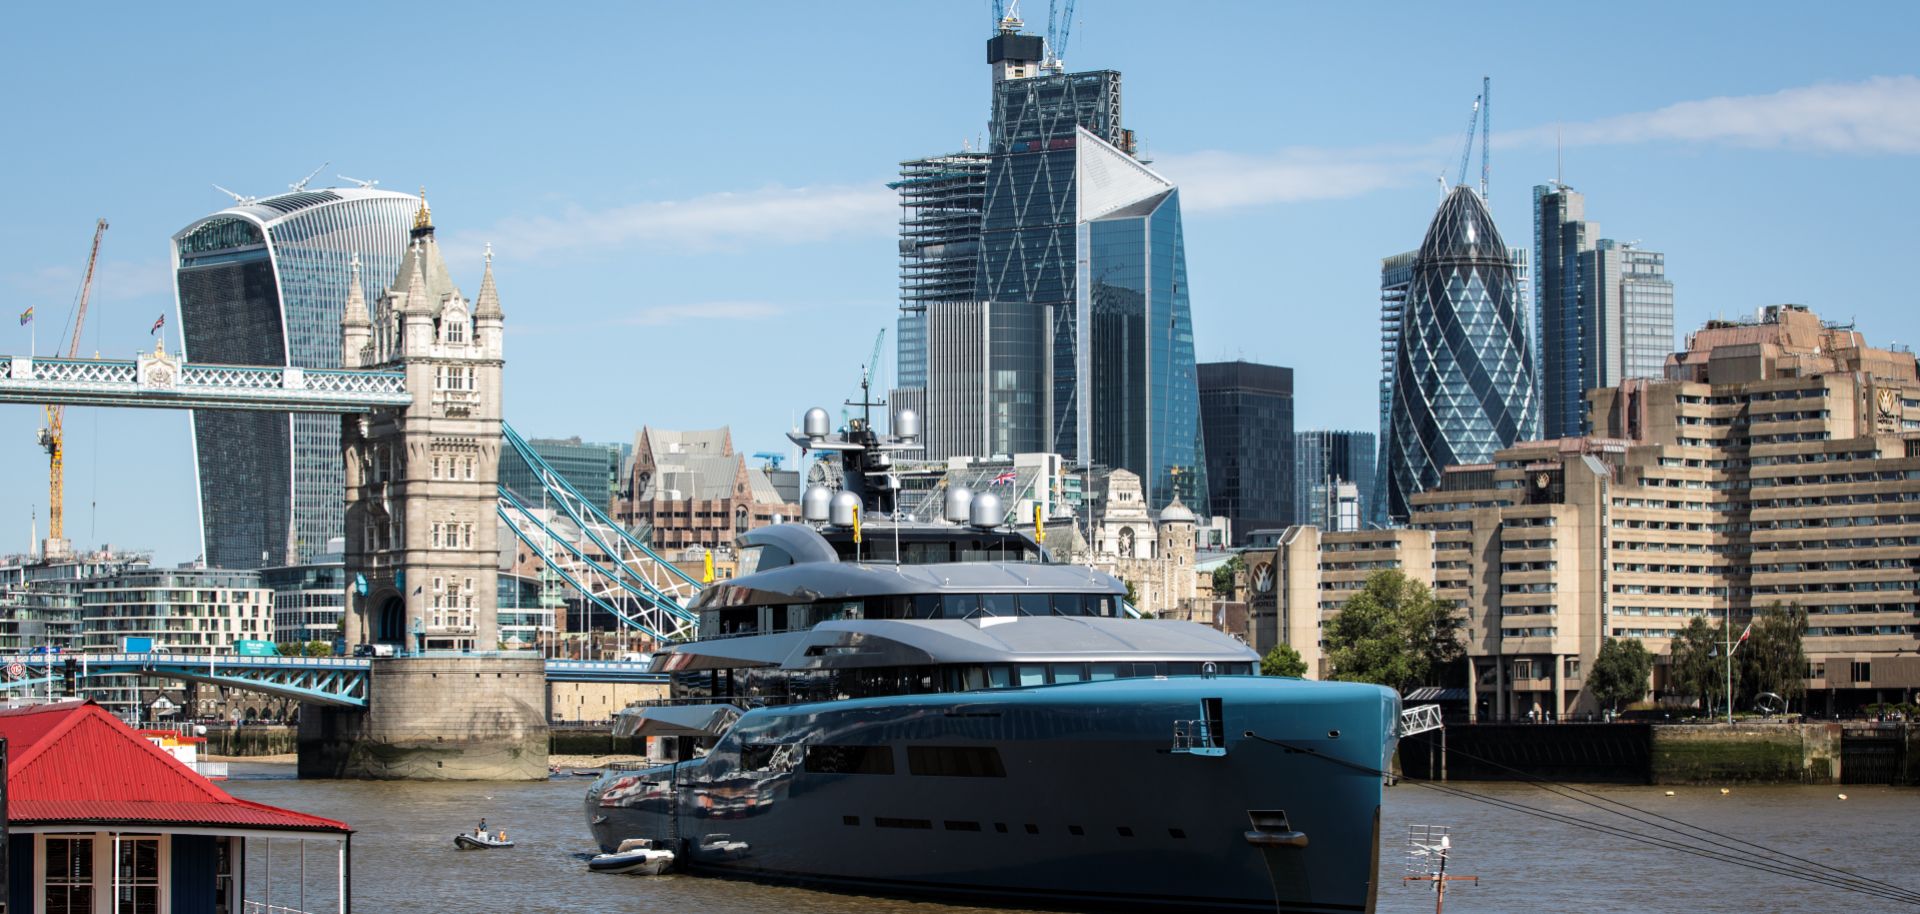 Billionaire Joe Lewis' nearly 100-meter luxury yacht floats in Butler's Wharf in London in July 2018.